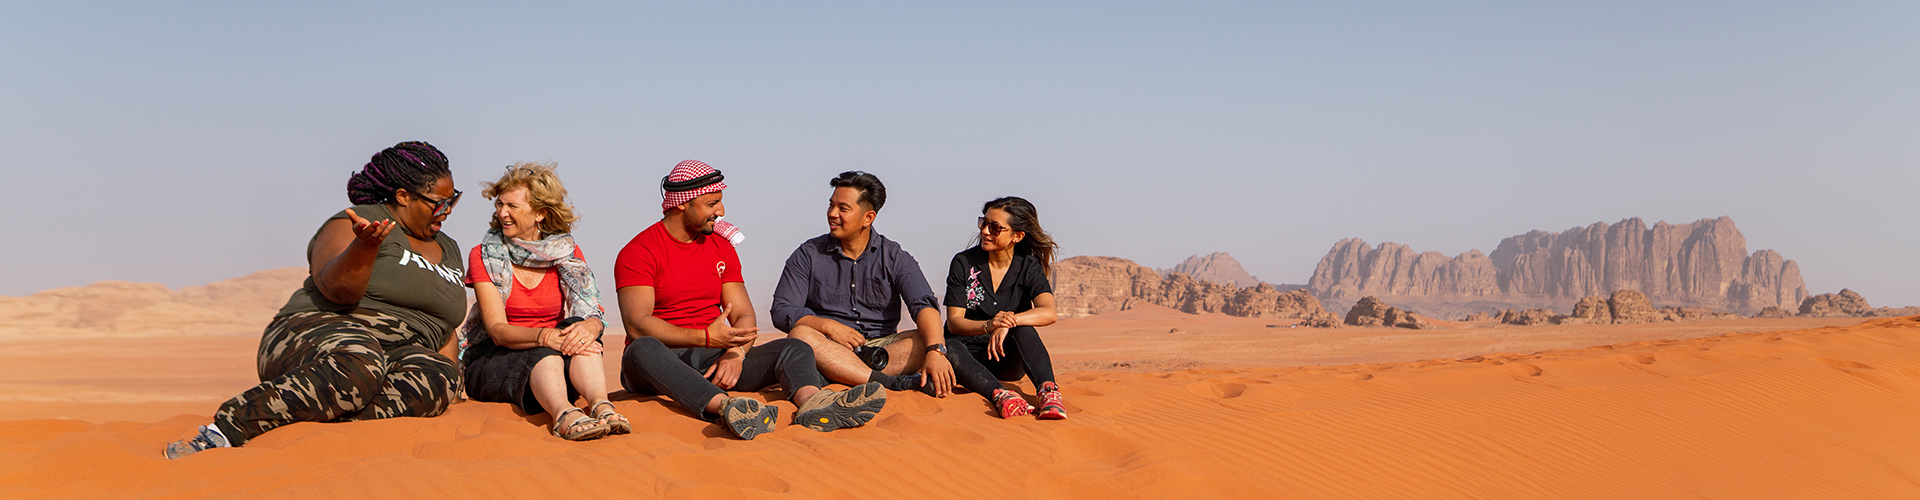 Group of travellers in Wadi Rum, Jordan with Intrepid Travel